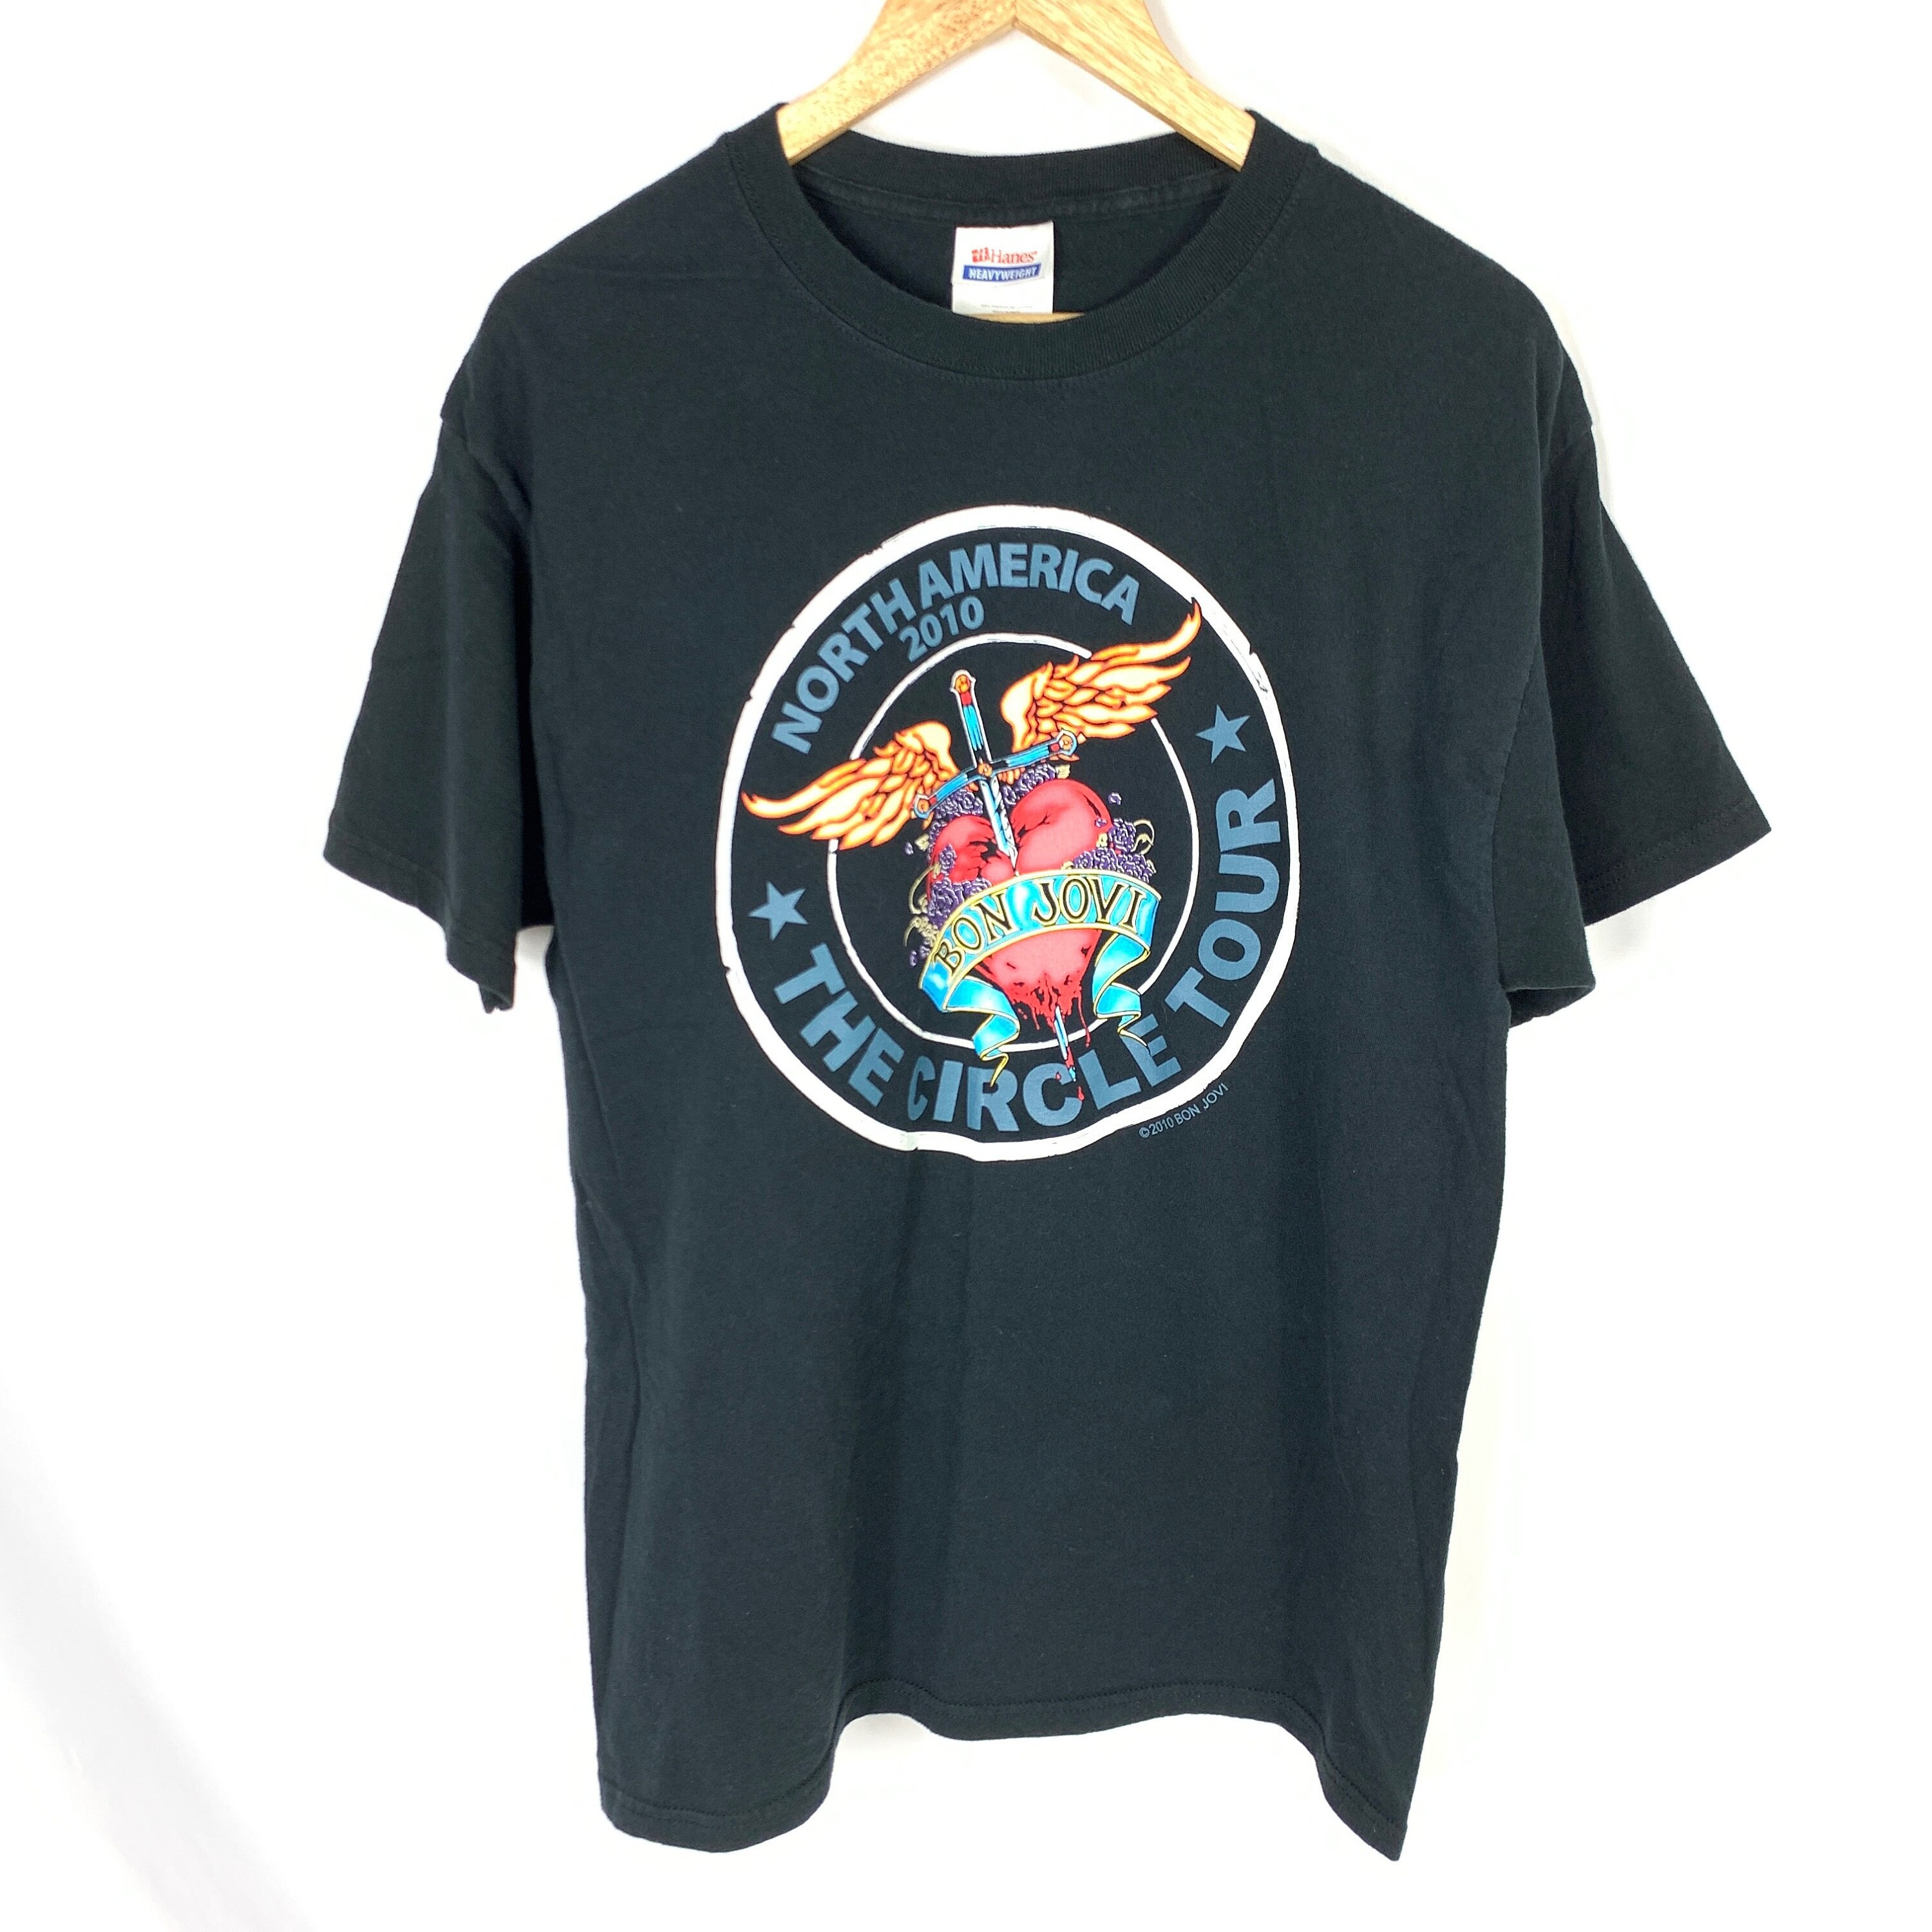 Bon Jovi 2010 Circle Tour Concert T Shirt Merchandise Large | Etsy